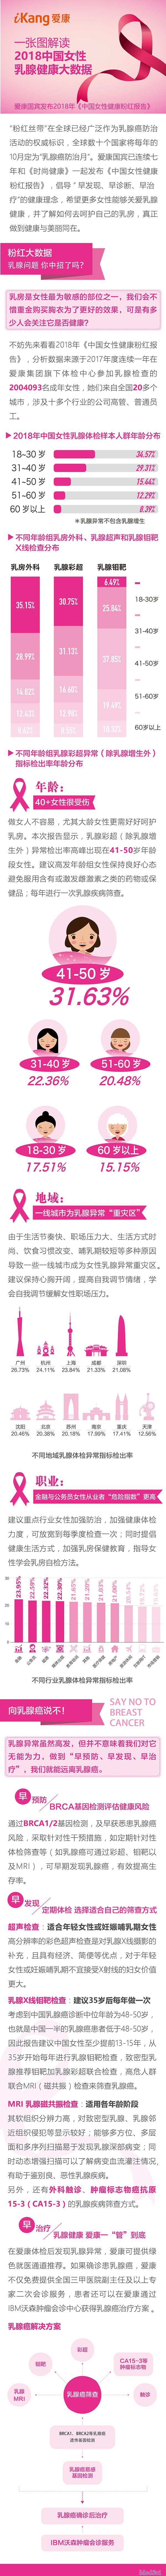 一图解读2018中国女性<font color="red">乳腺</font><font color="red">健康</font>大数据